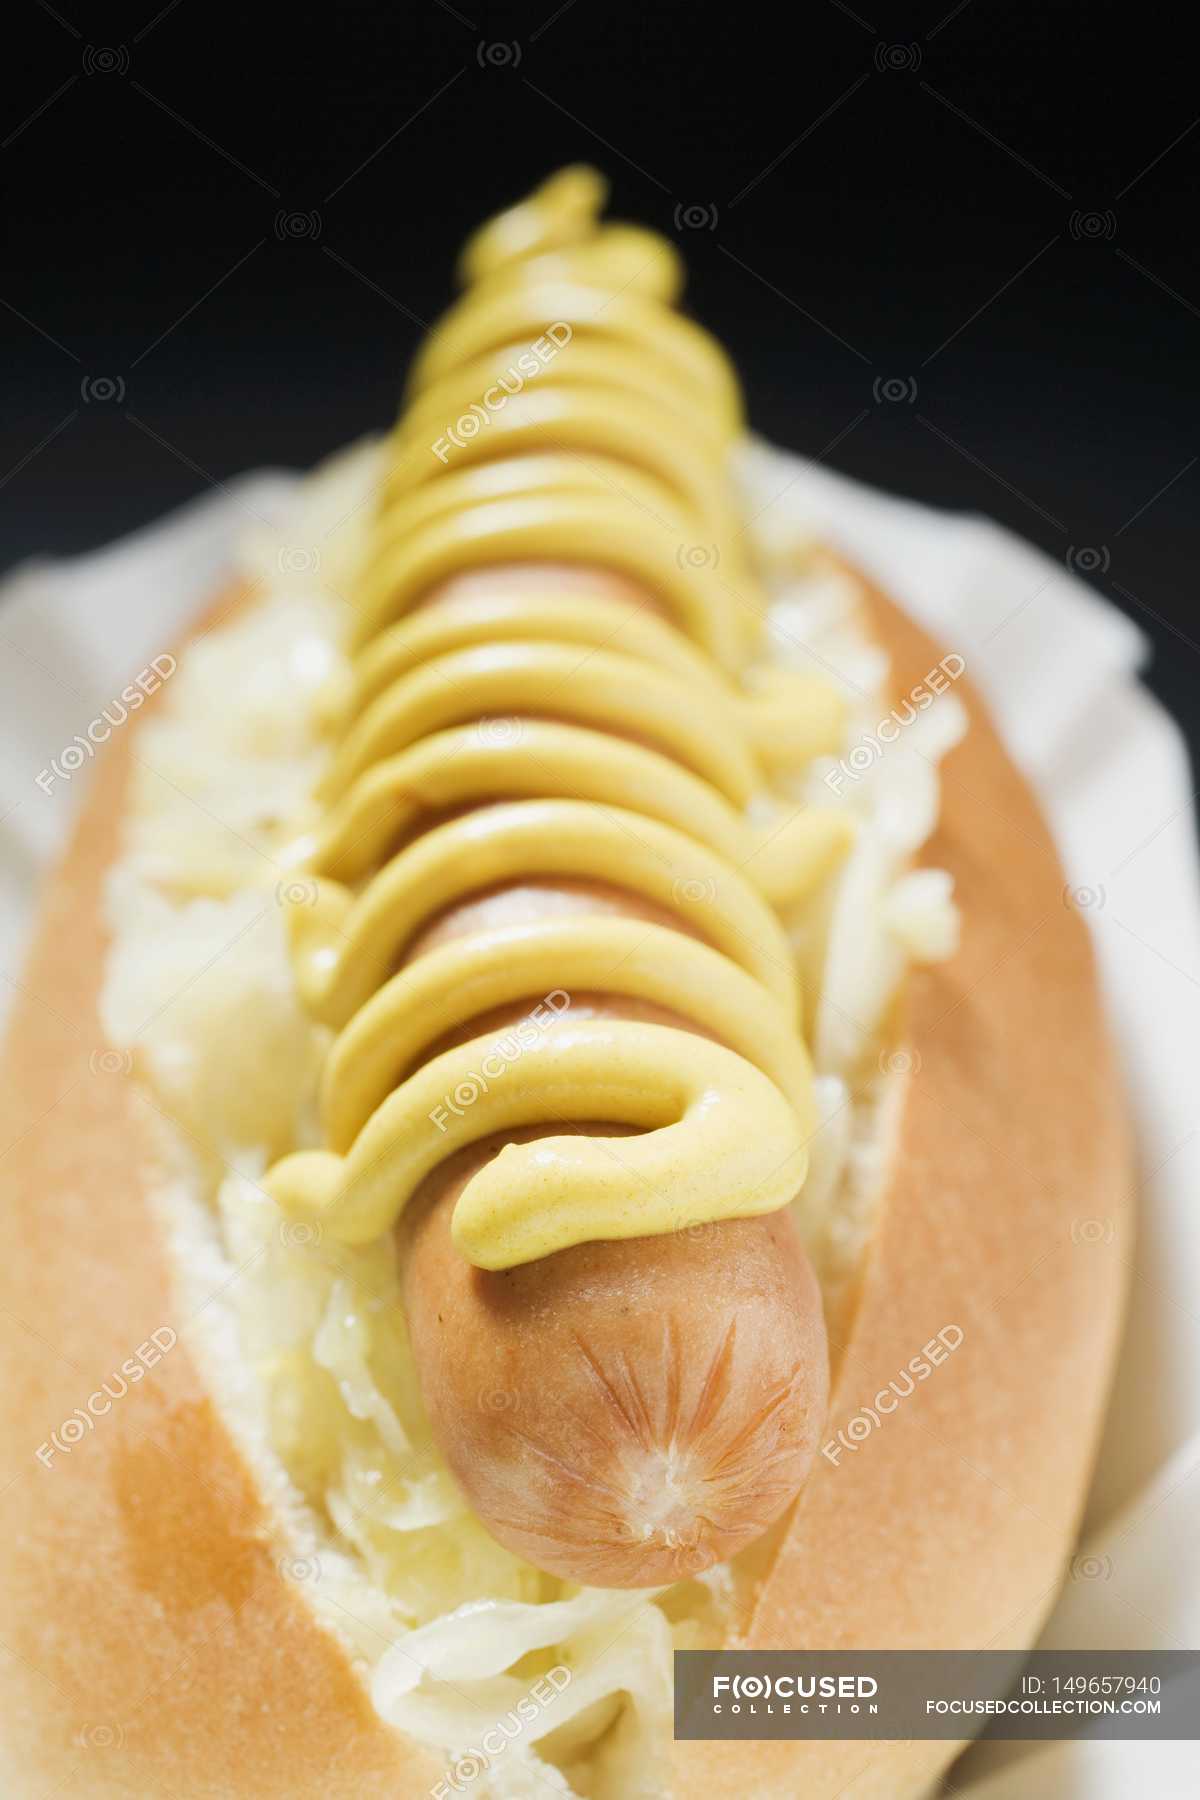 Hot dog tedesco: la ricetta con würstel e crauti